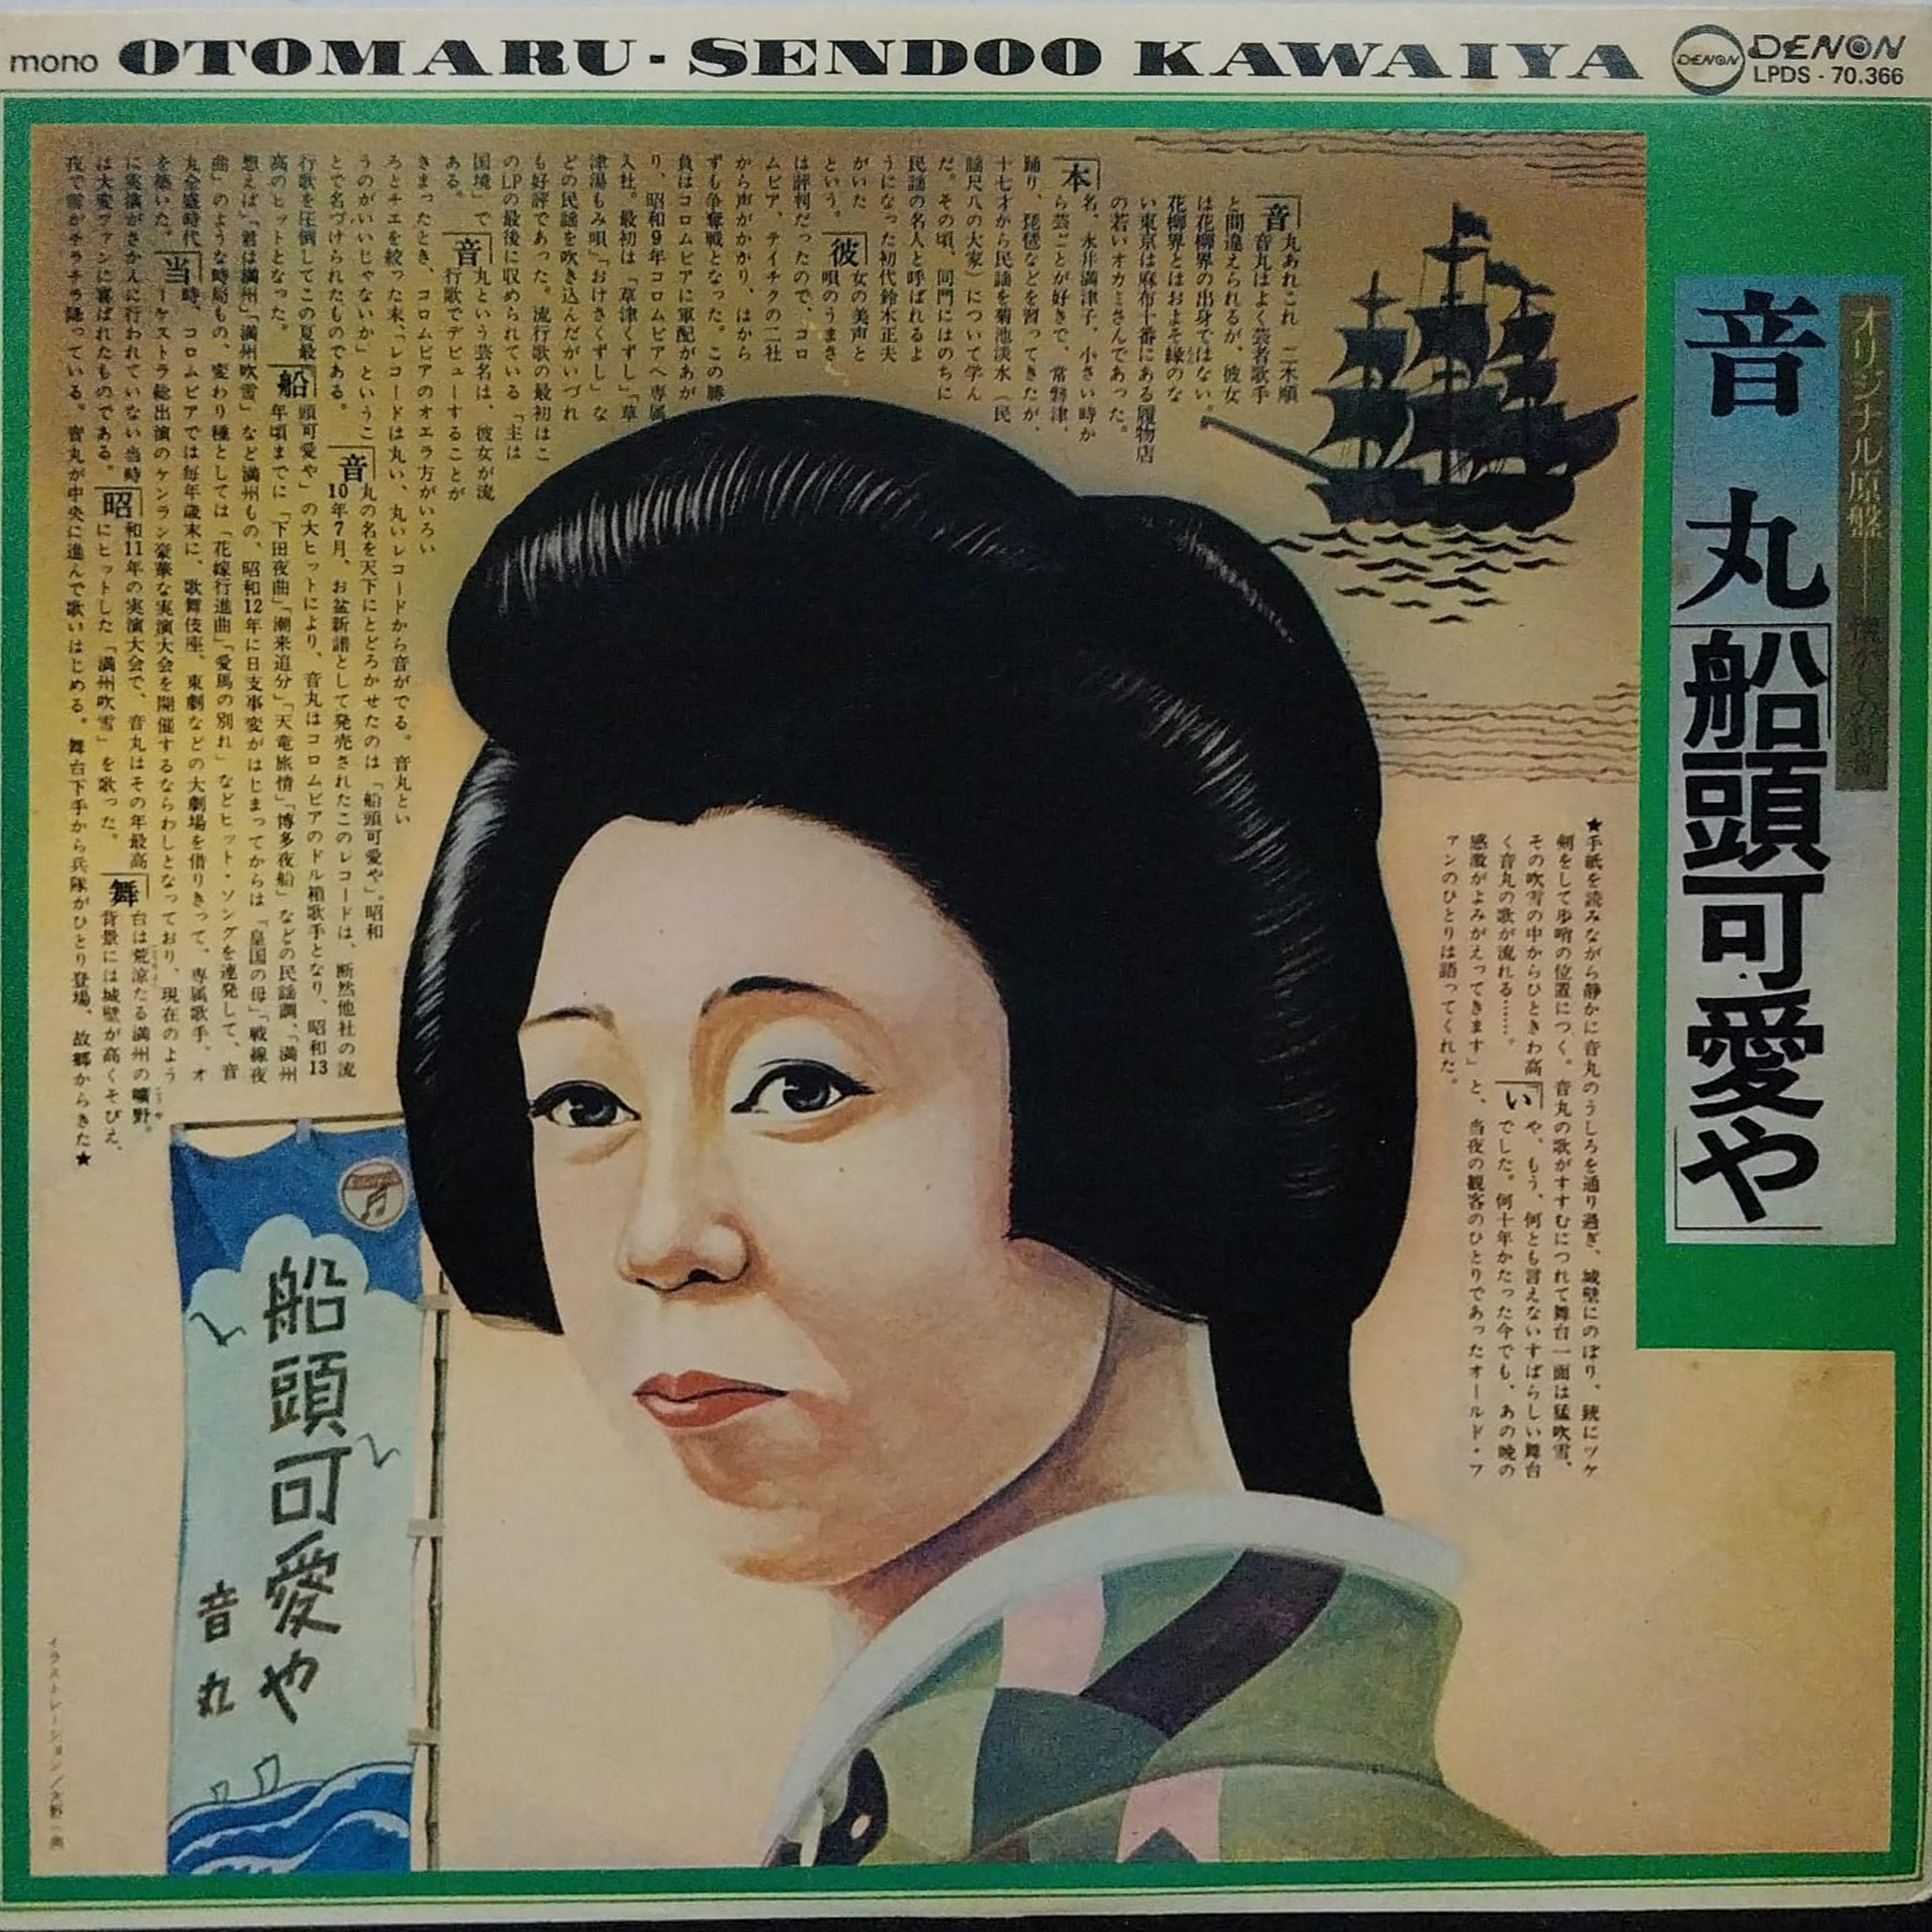 Vinil - Otomaru - Sendoo Kawaiya